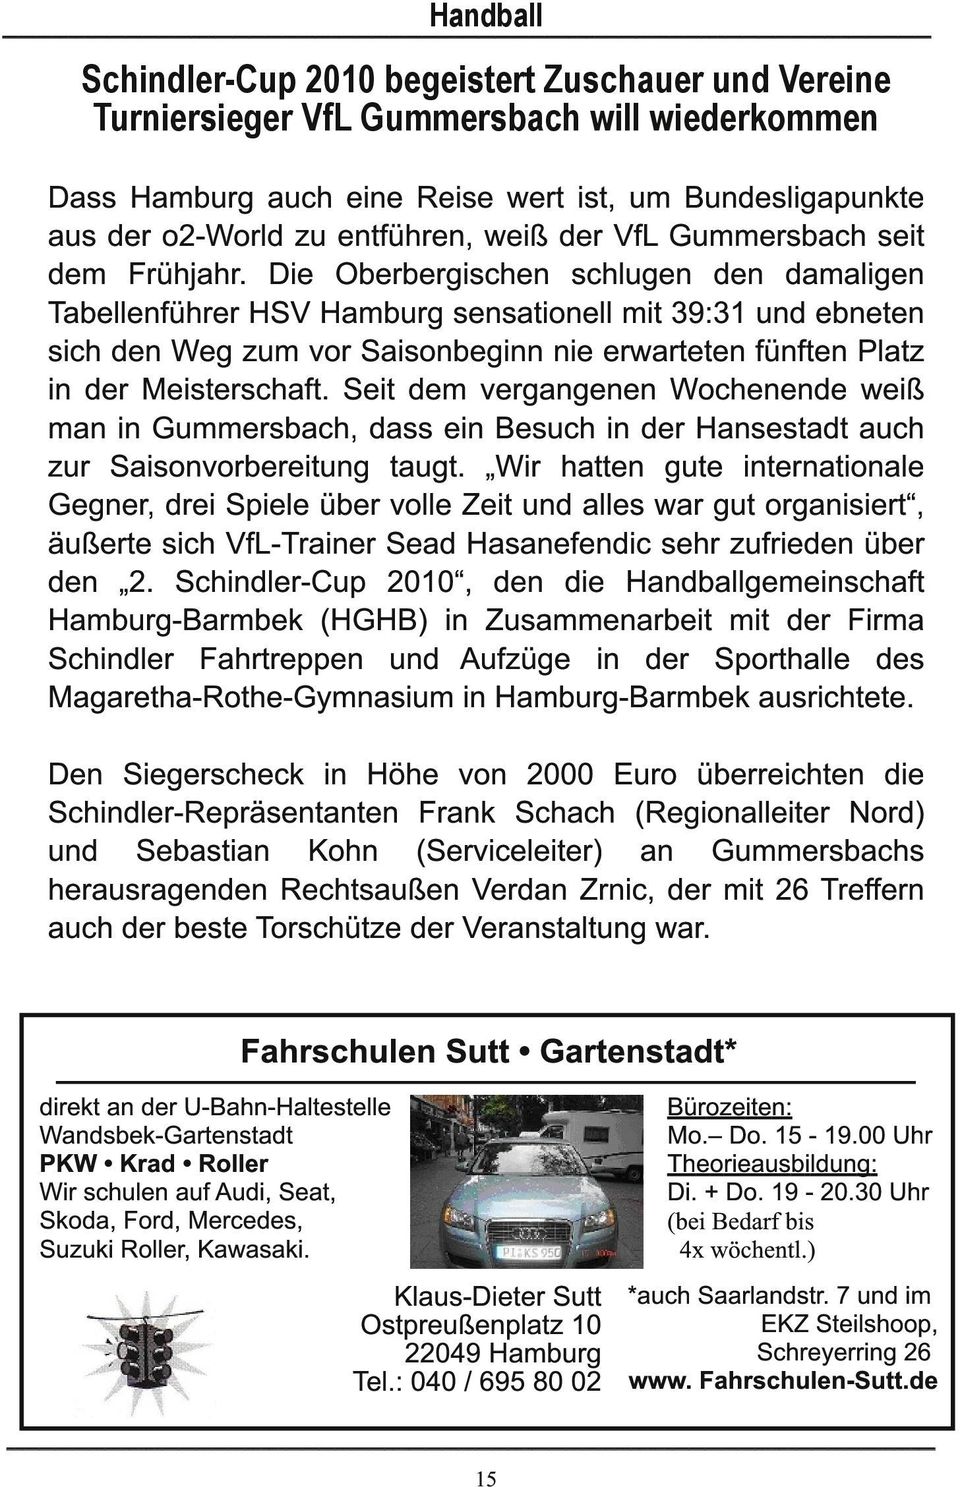 Die Oberbergischen schlugen den damaligen Tabellenführer HSV Hamburg sensationell mit 39:31 und ebneten sich den Weg zum vor Saisonbeginn nie erwarteten fünften Platz in der Meisterschaft.